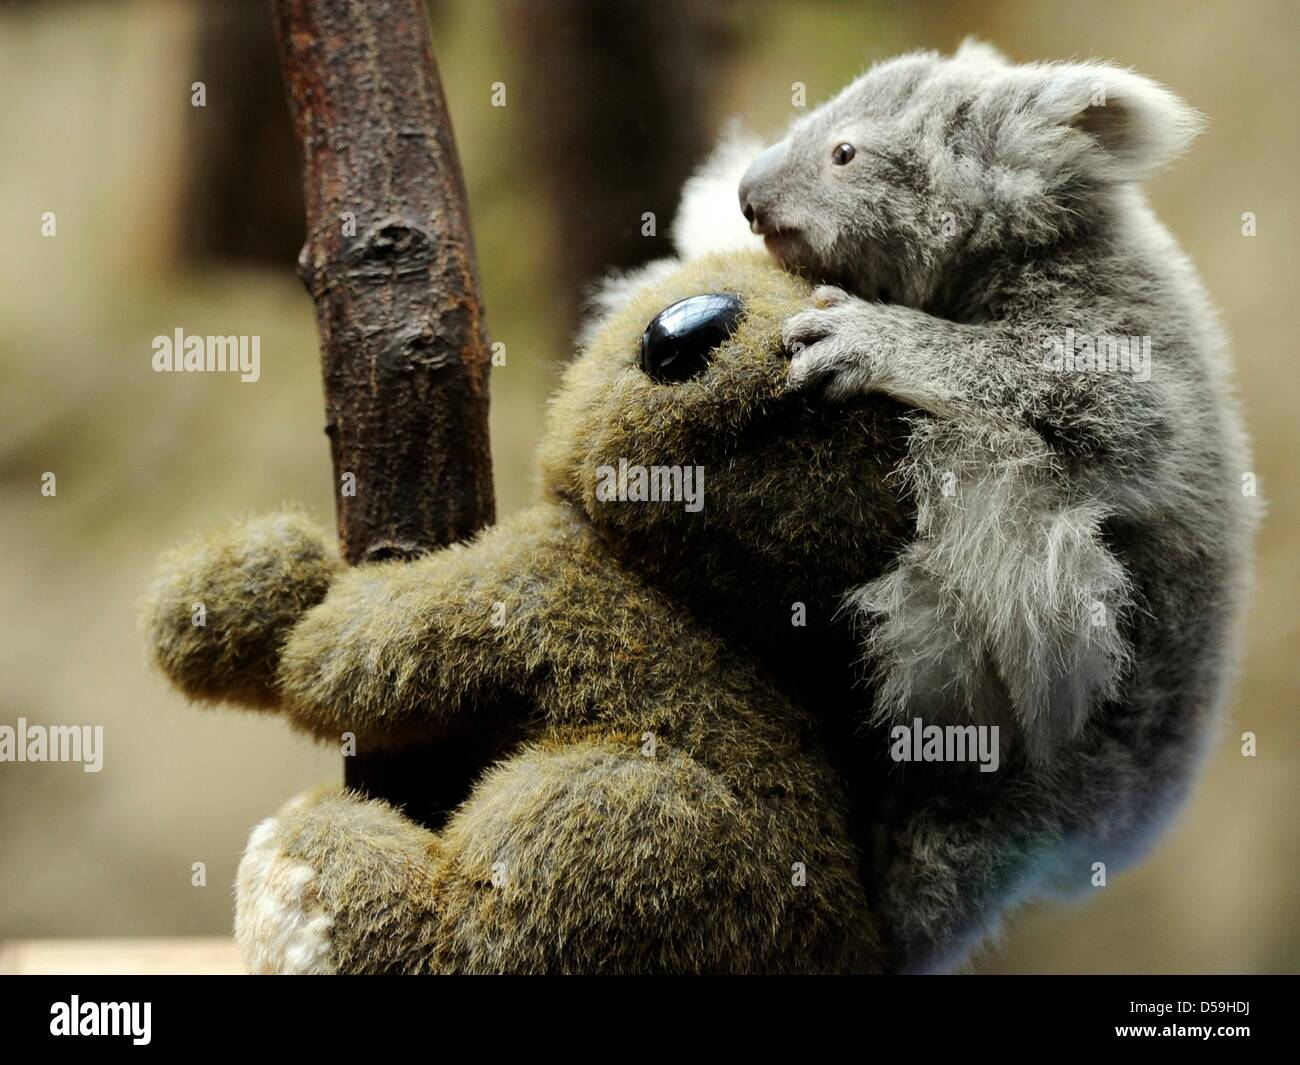 Duisburg, Allemagne. 27 mars 2013. Un jeune koala est assis sur le dos d'un jouet câlin au zoo de Duisburg, Allemagne, 27 mars 2013. Le jeune animal est l'un des deux bébé koalas, qui sont nés dans le zoo, il y a six mois. Photo : MARIUS BECKER/dpa/Alamy Live News Banque D'Images